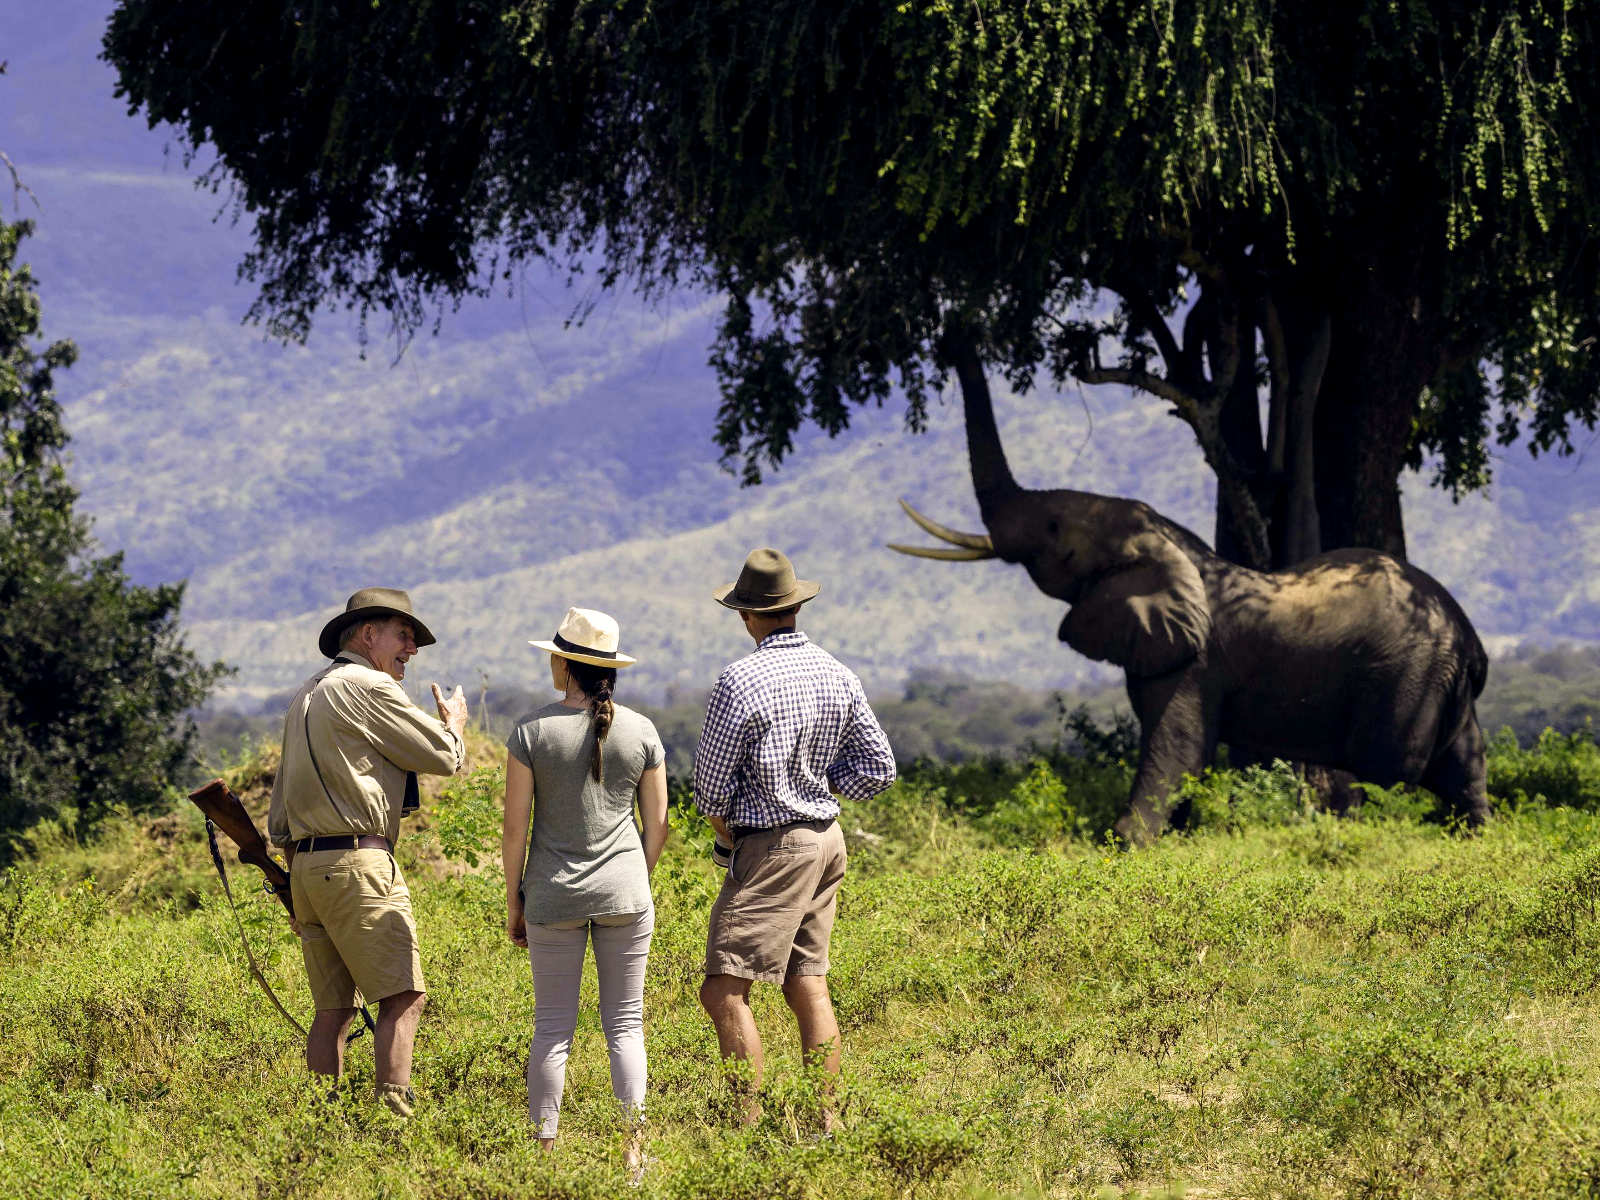 Elefant unter einem Baum und touristen